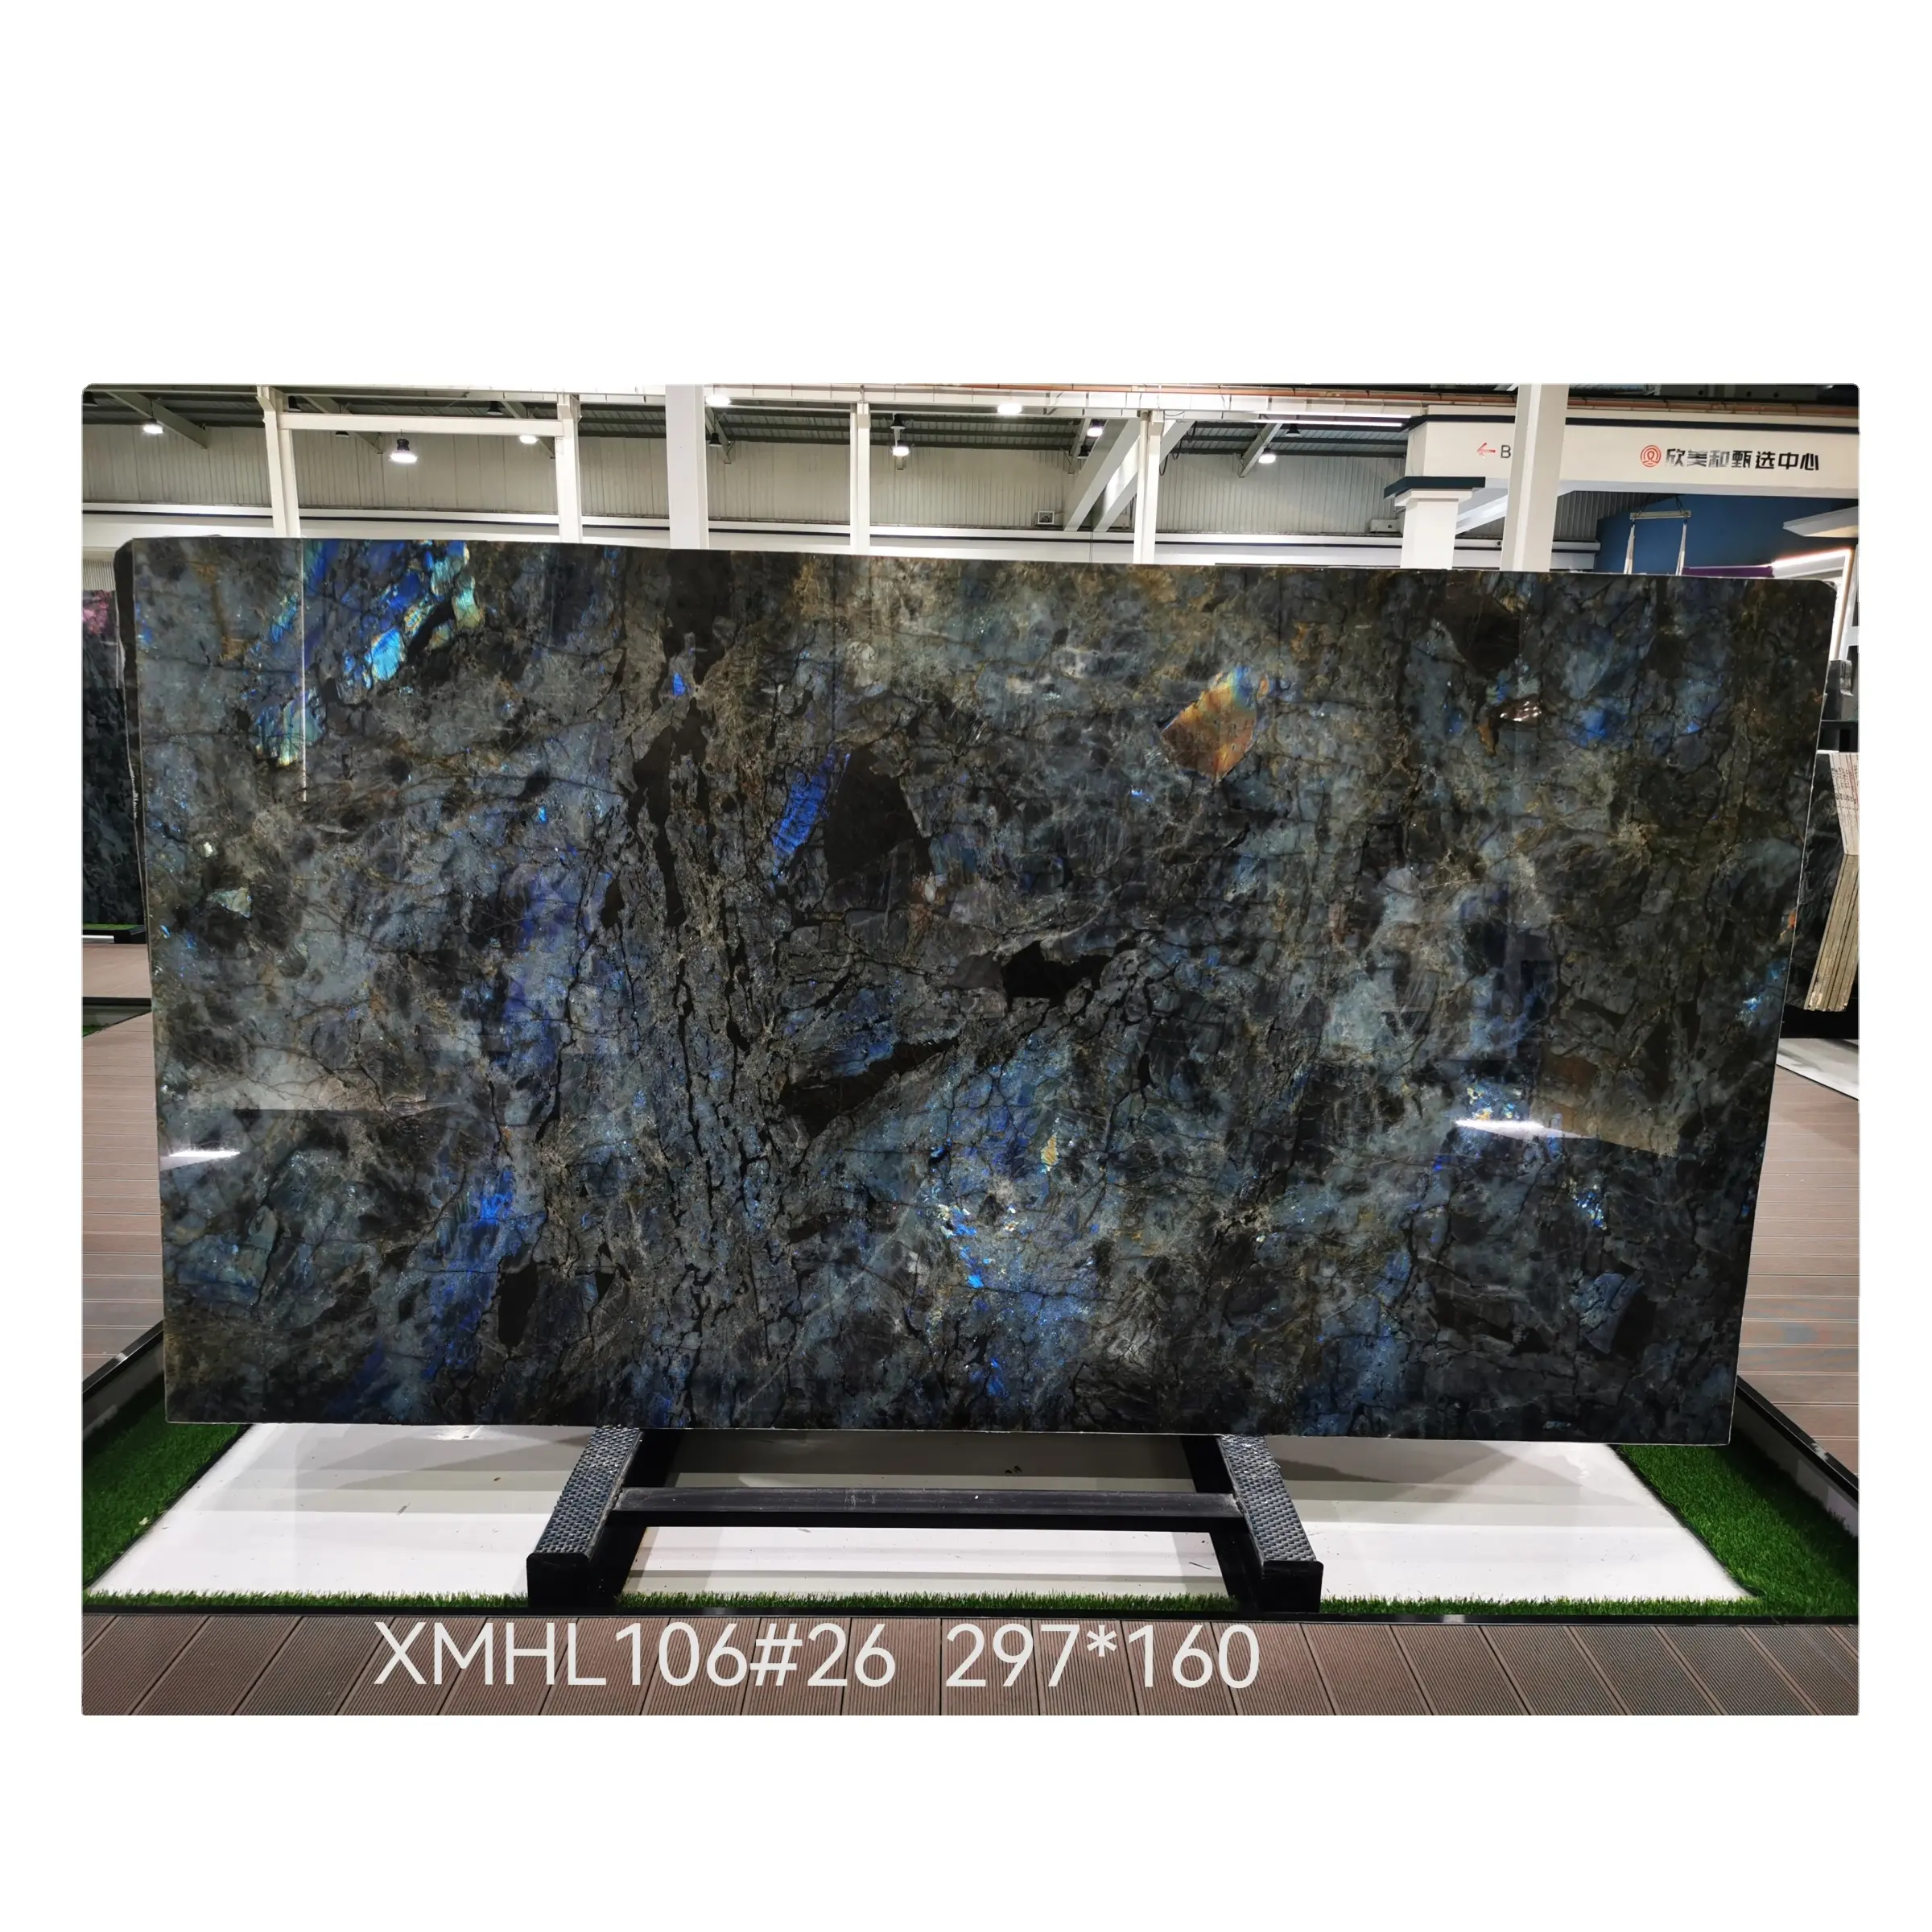 Lüks mavi zümrüt egzotik arkadan aydınlatmalı granit madagaskar doğal taş tezgah masa Lemurian labradorit mavi granit döşeme